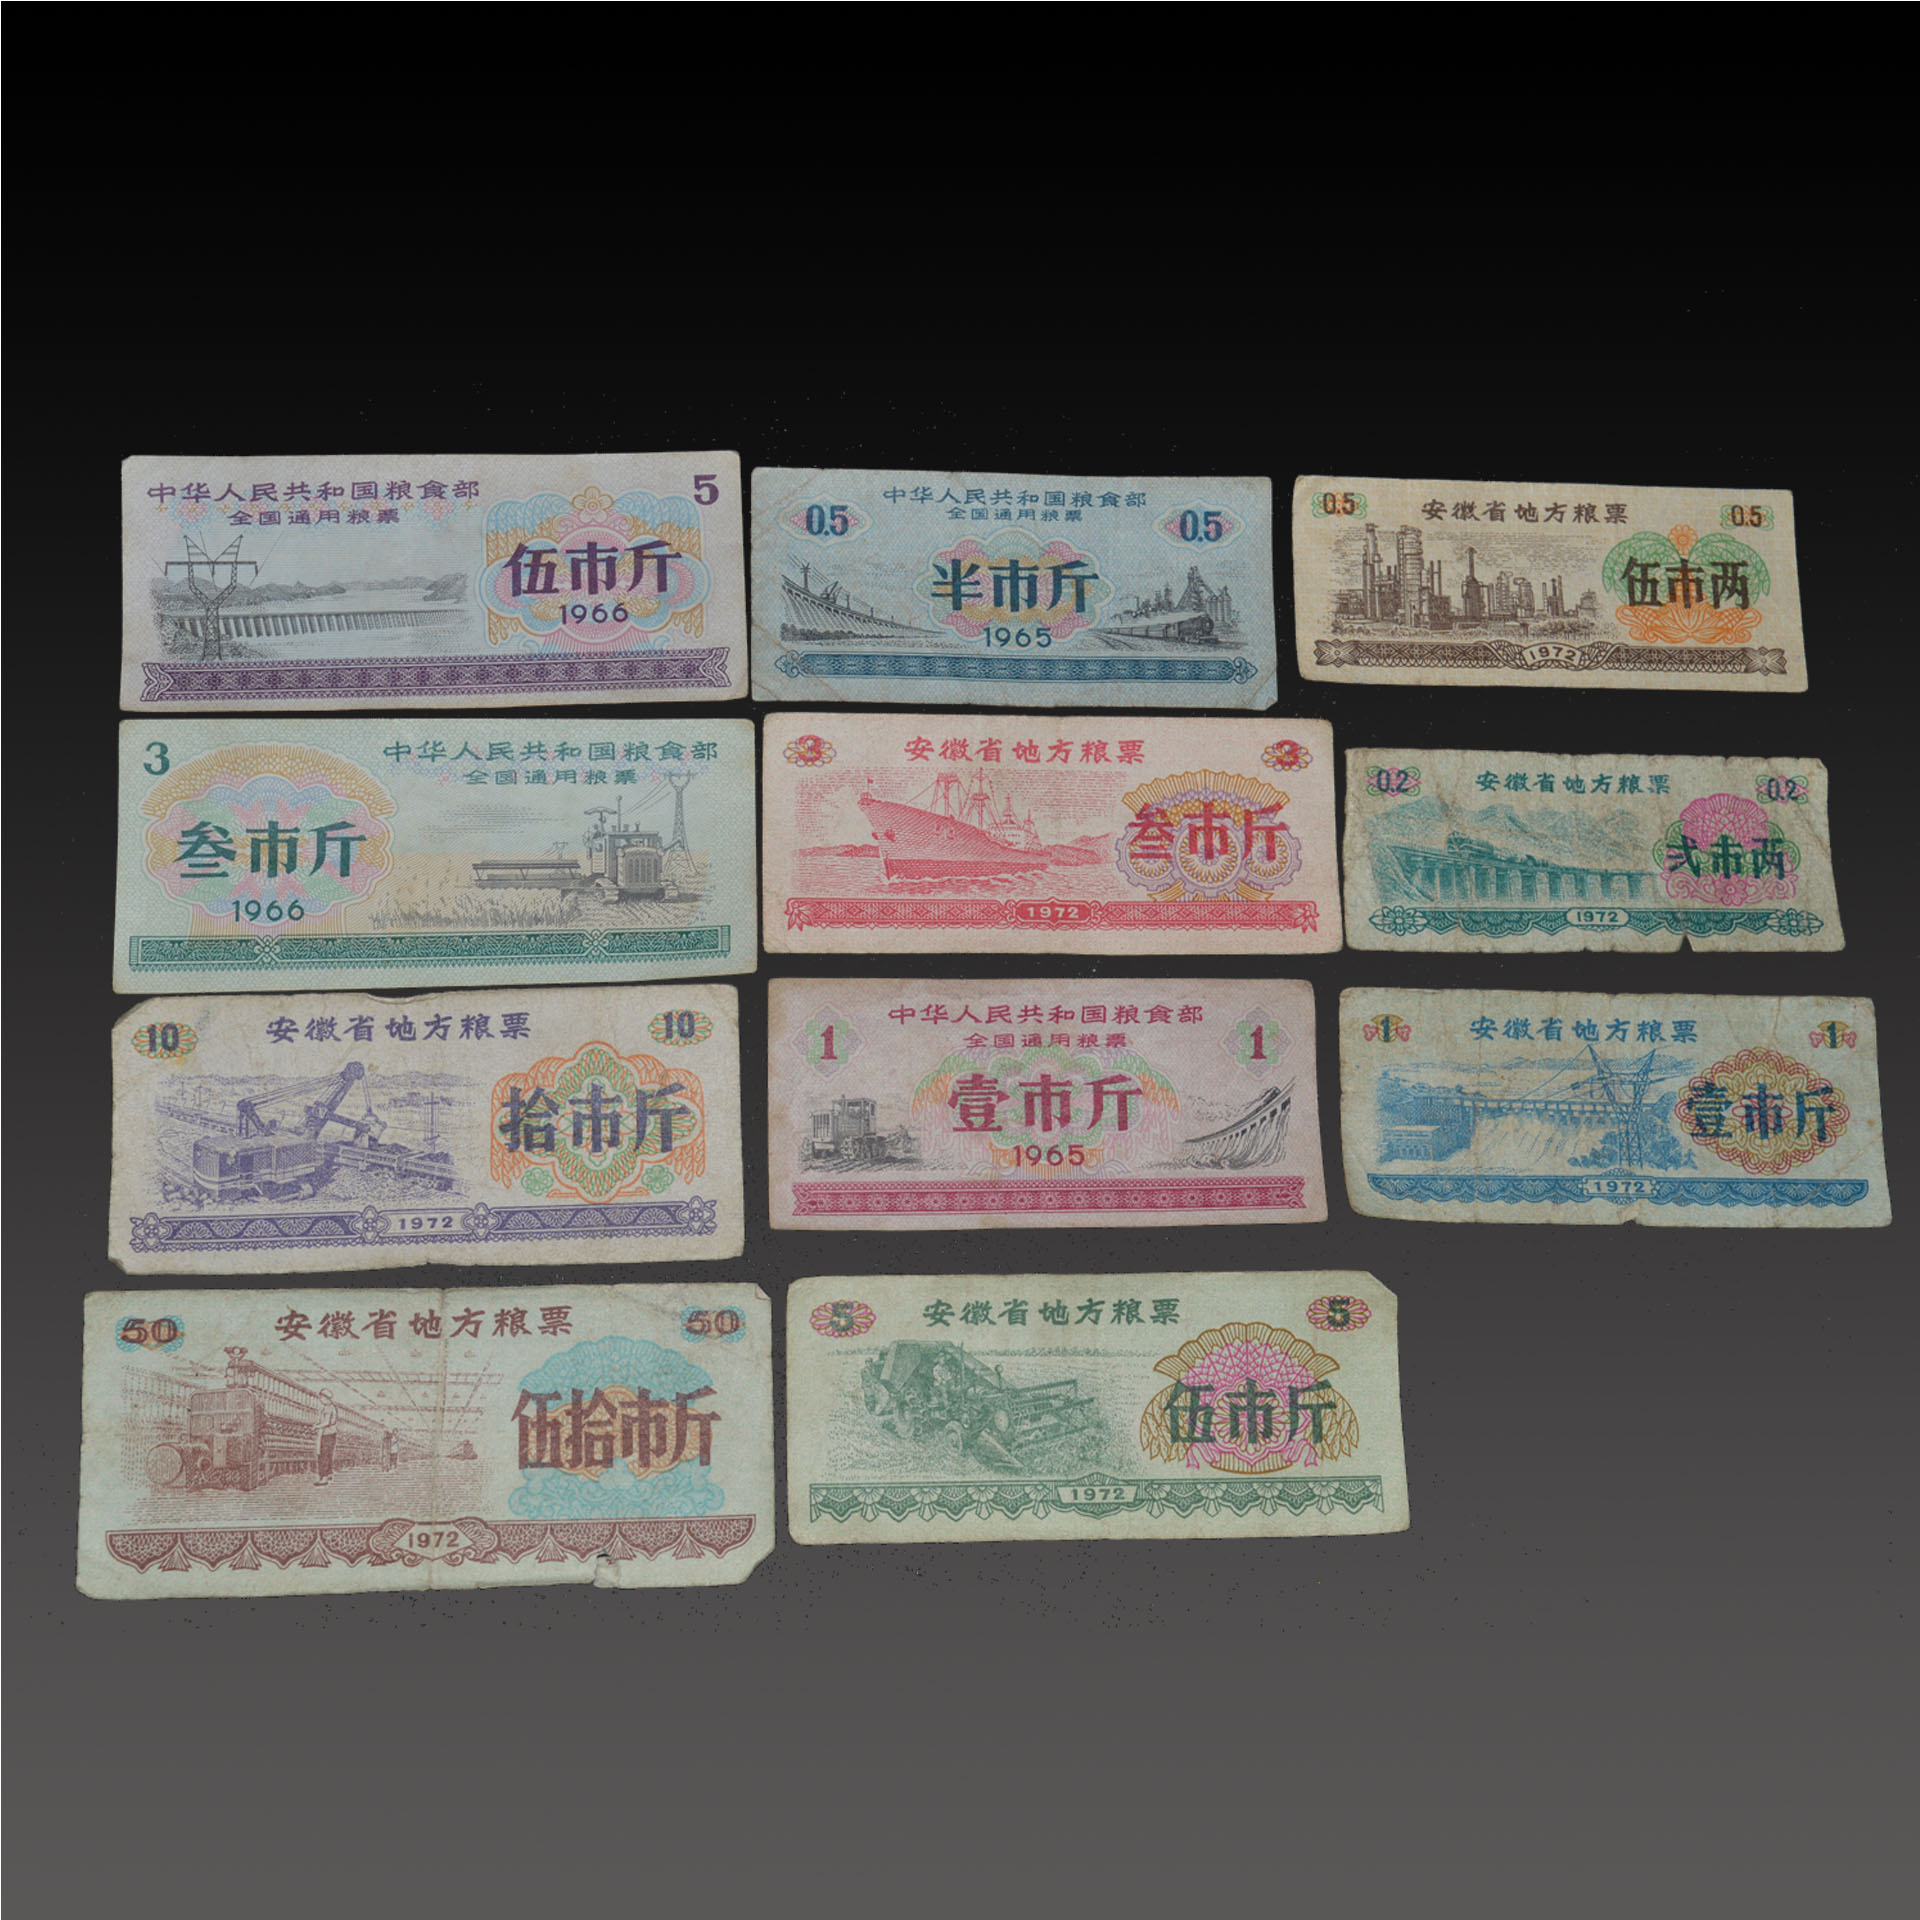 粮票 见证了中国长达30多年的 票证时代